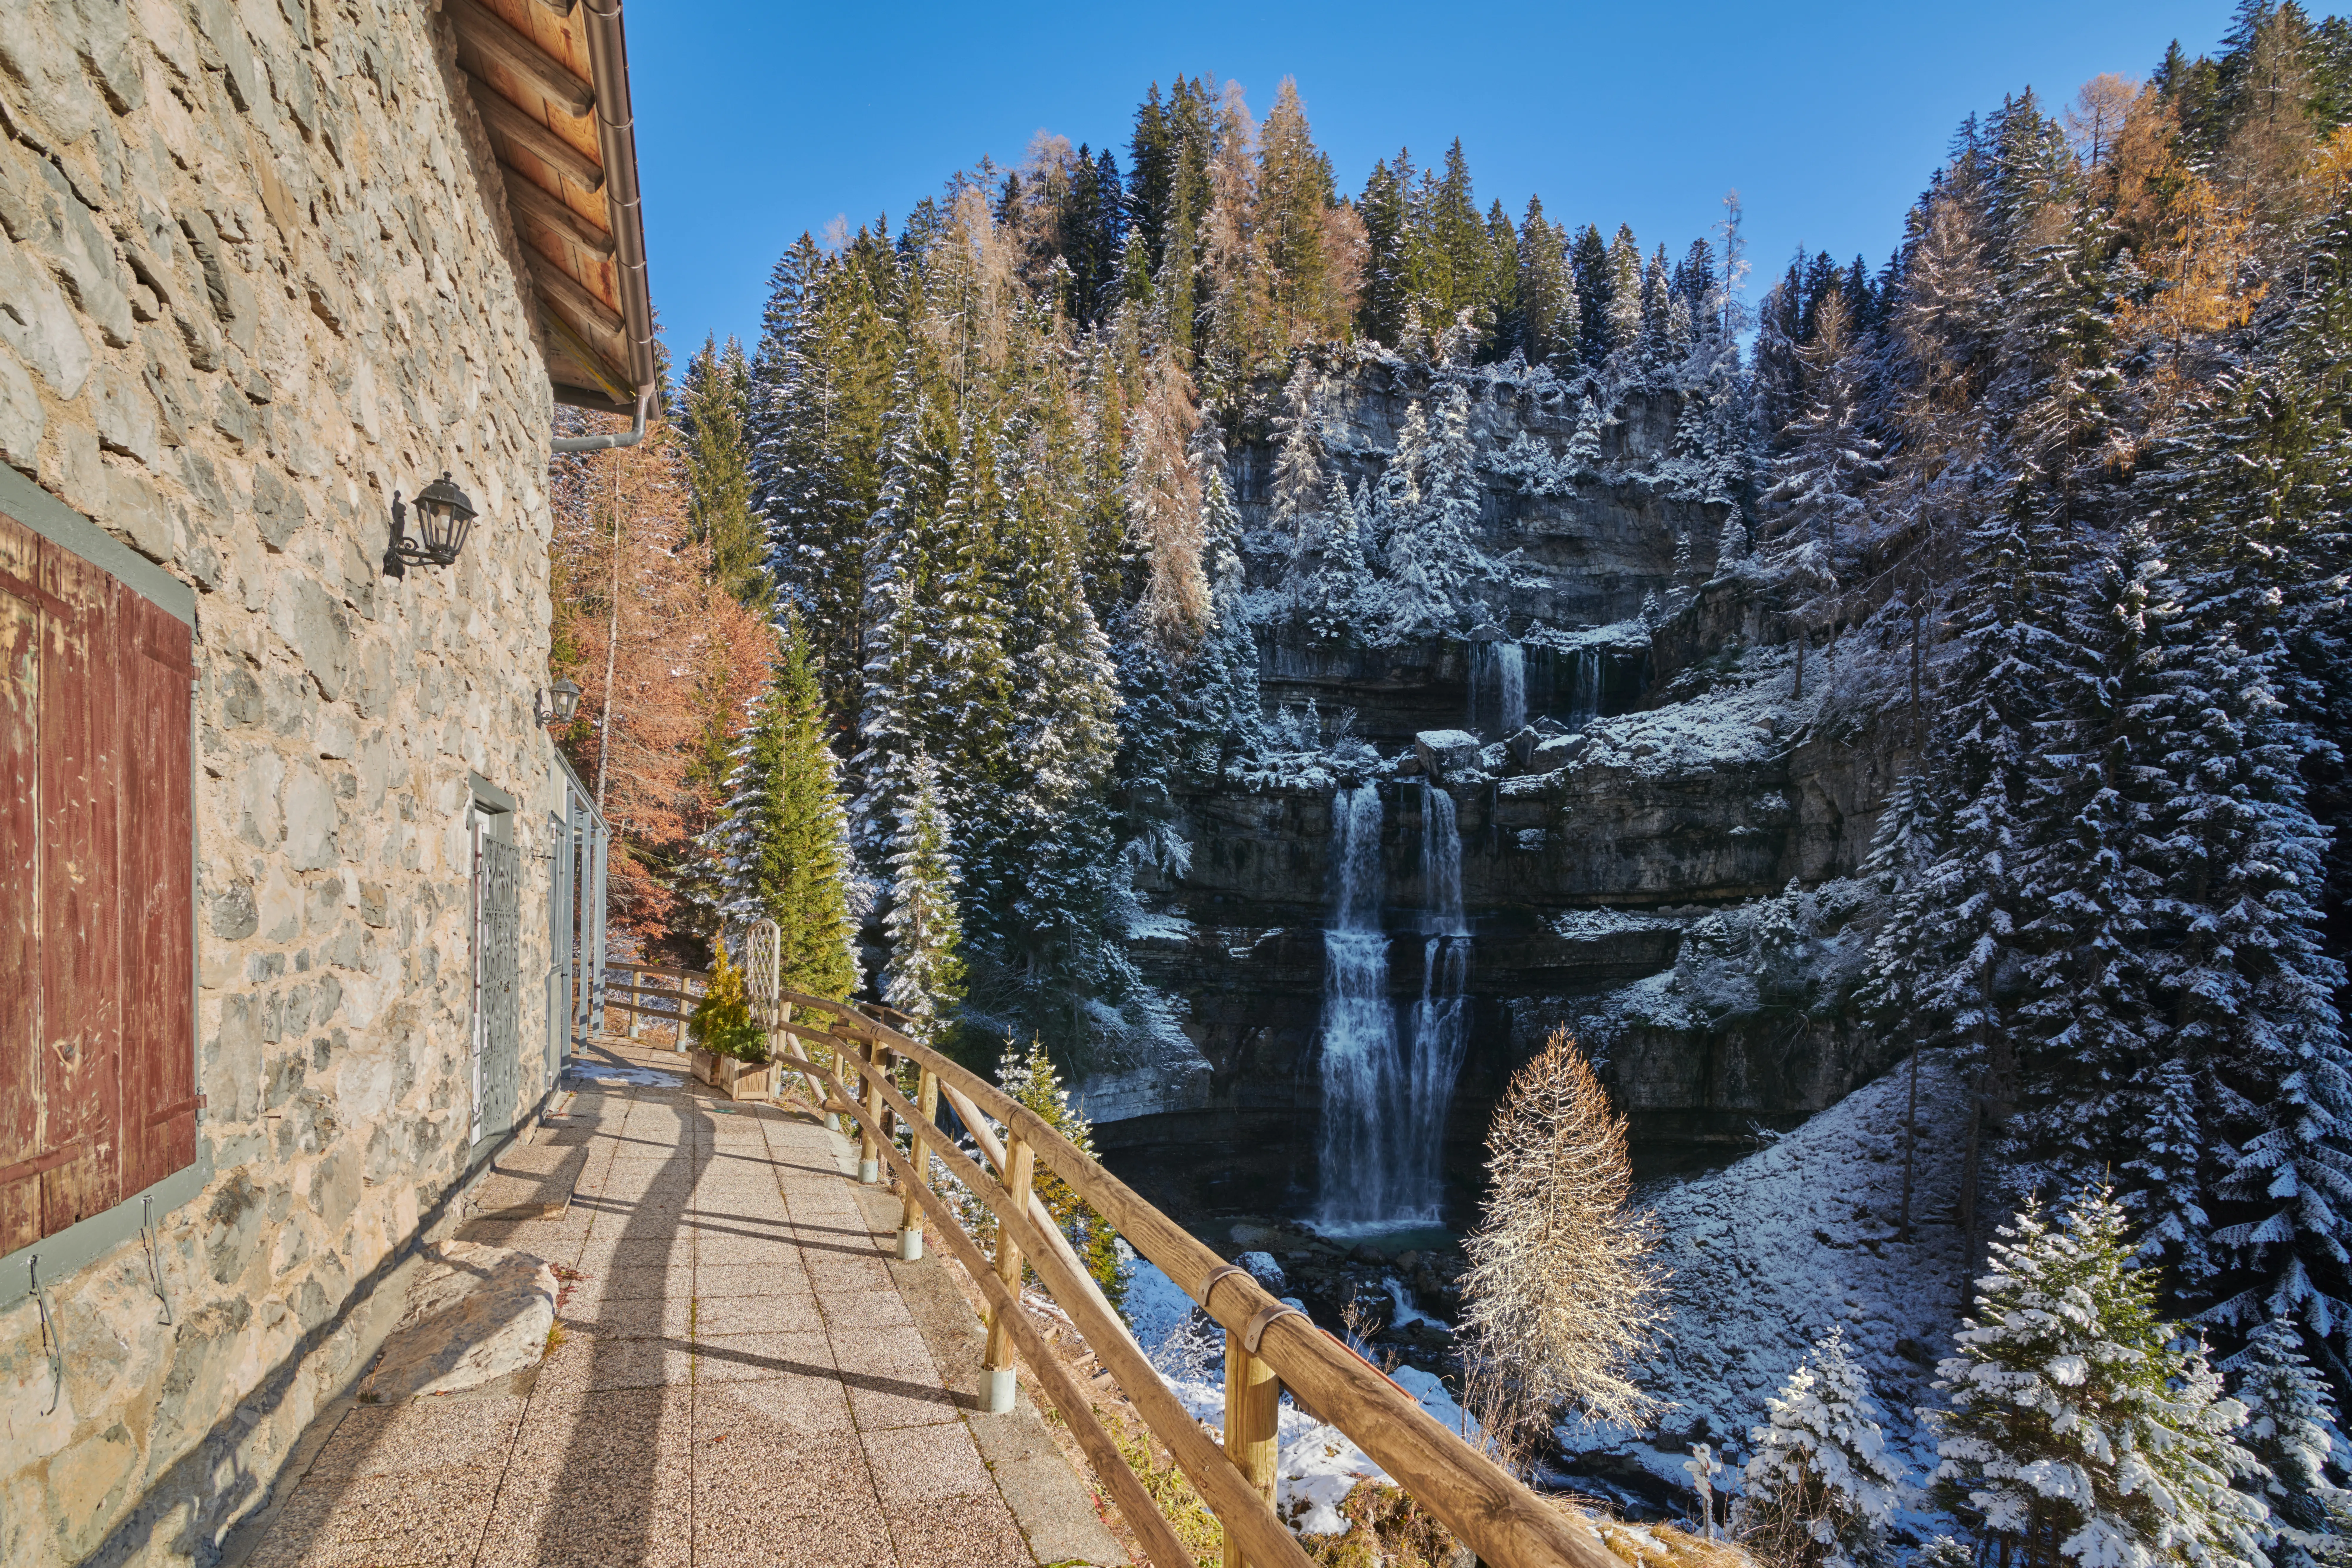 Schöner Wasserfall Vallesinella in Madonna di Campiglio im Herbst, Nationalpark Adamello-Brenta,Trentino,Italien Dolomiten